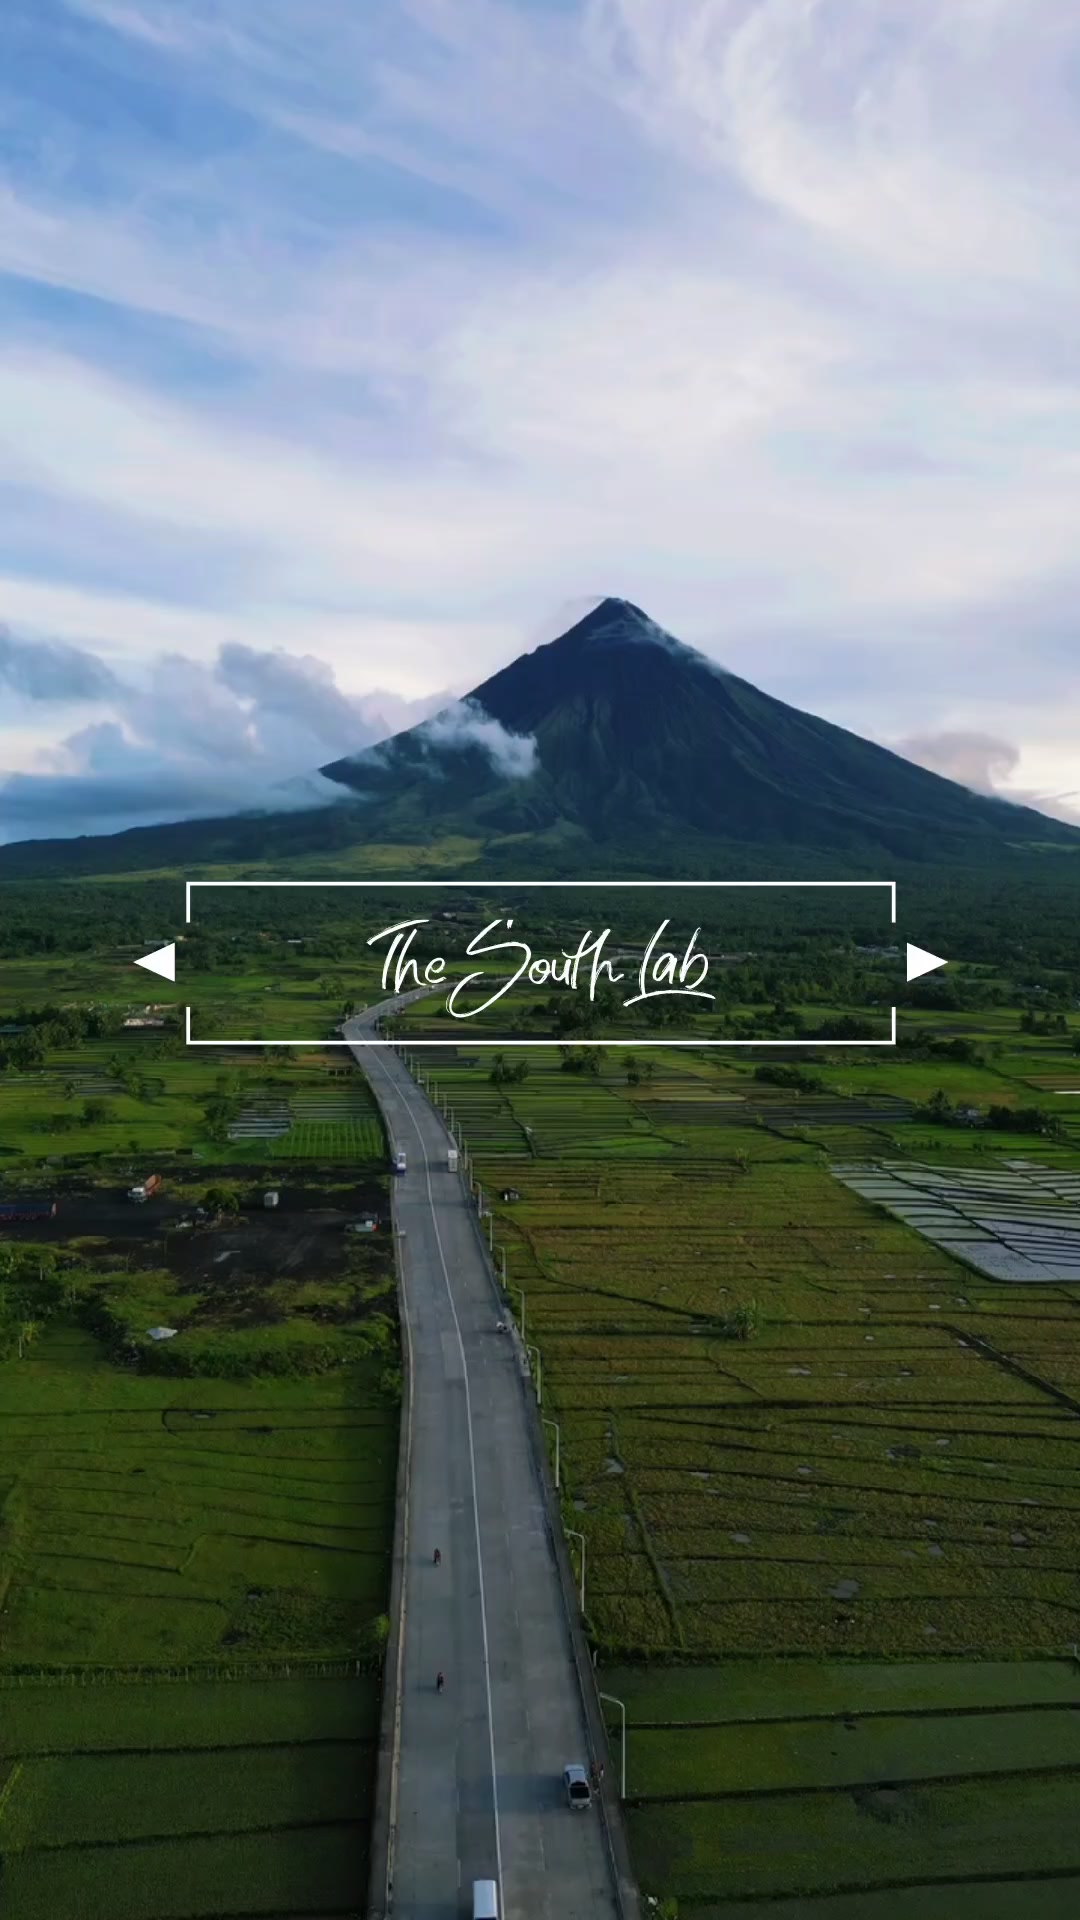 Mt Mayon